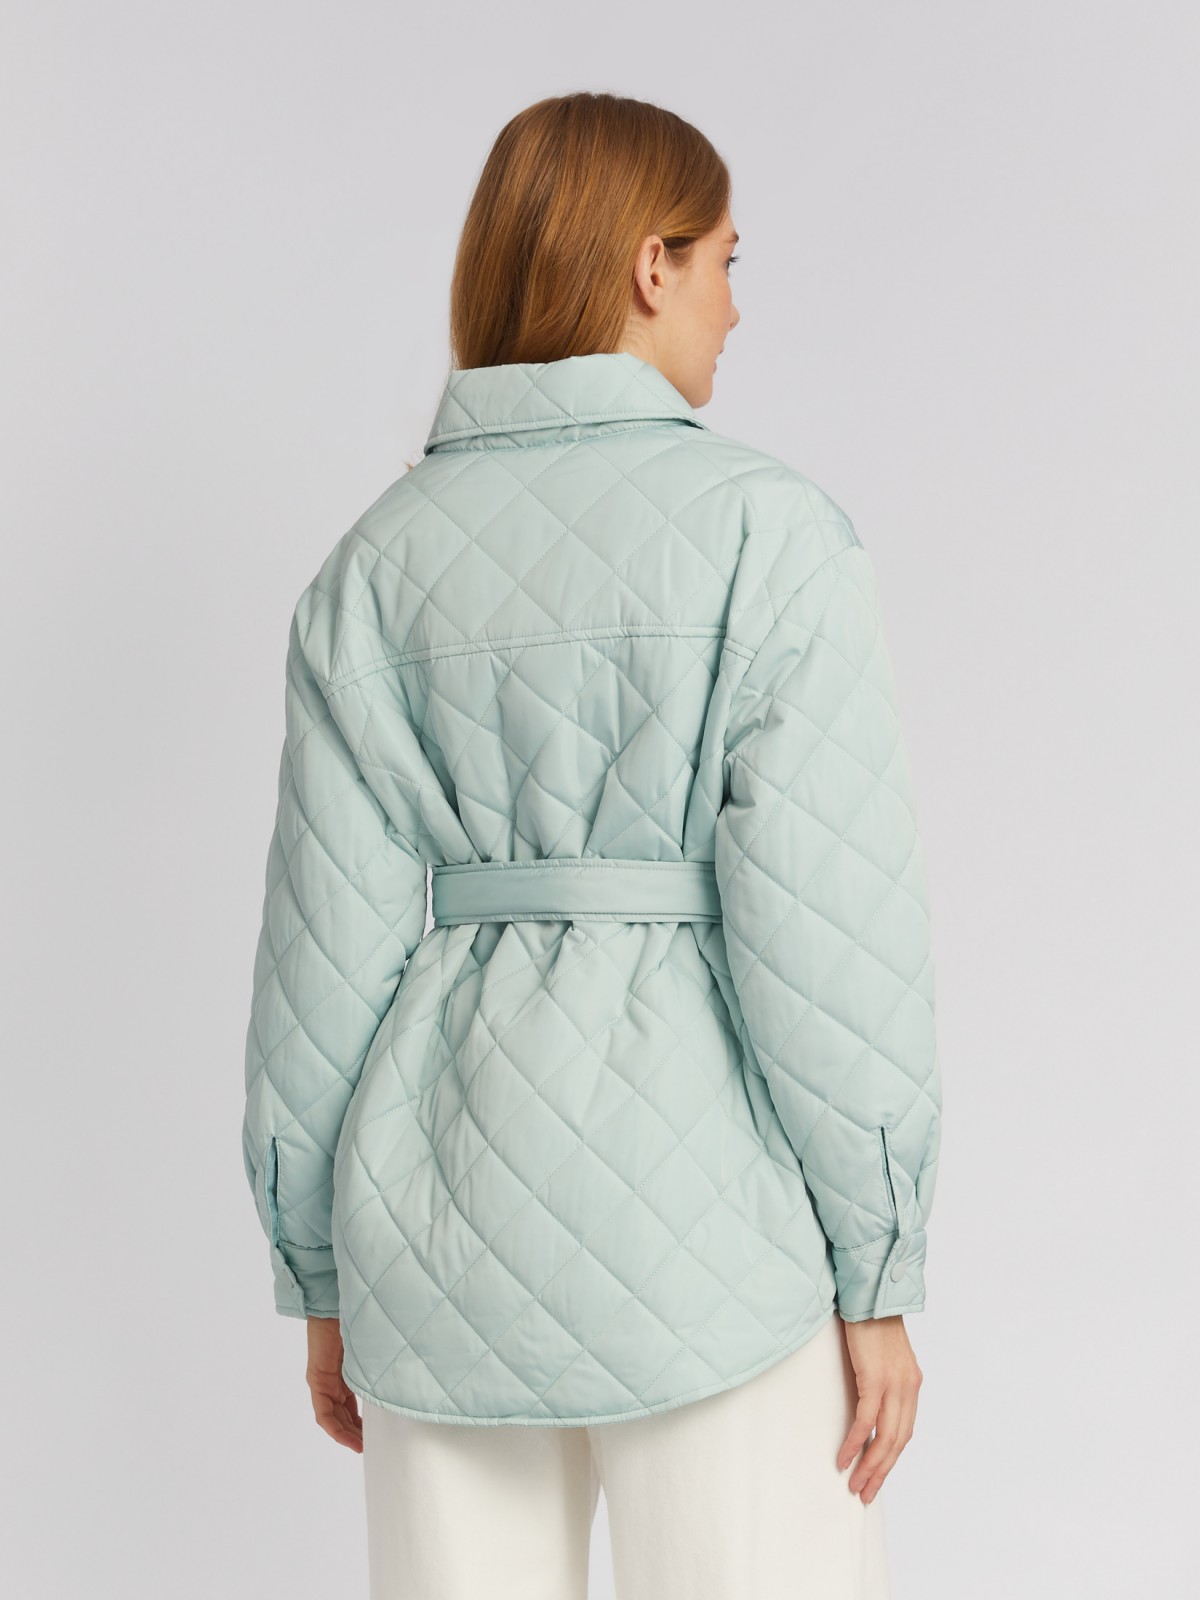 Утеплённая стёганая куртка-рубашка на синтепоне с поясом zolla 024135102134, цвет мятный, размер XS - фото 6